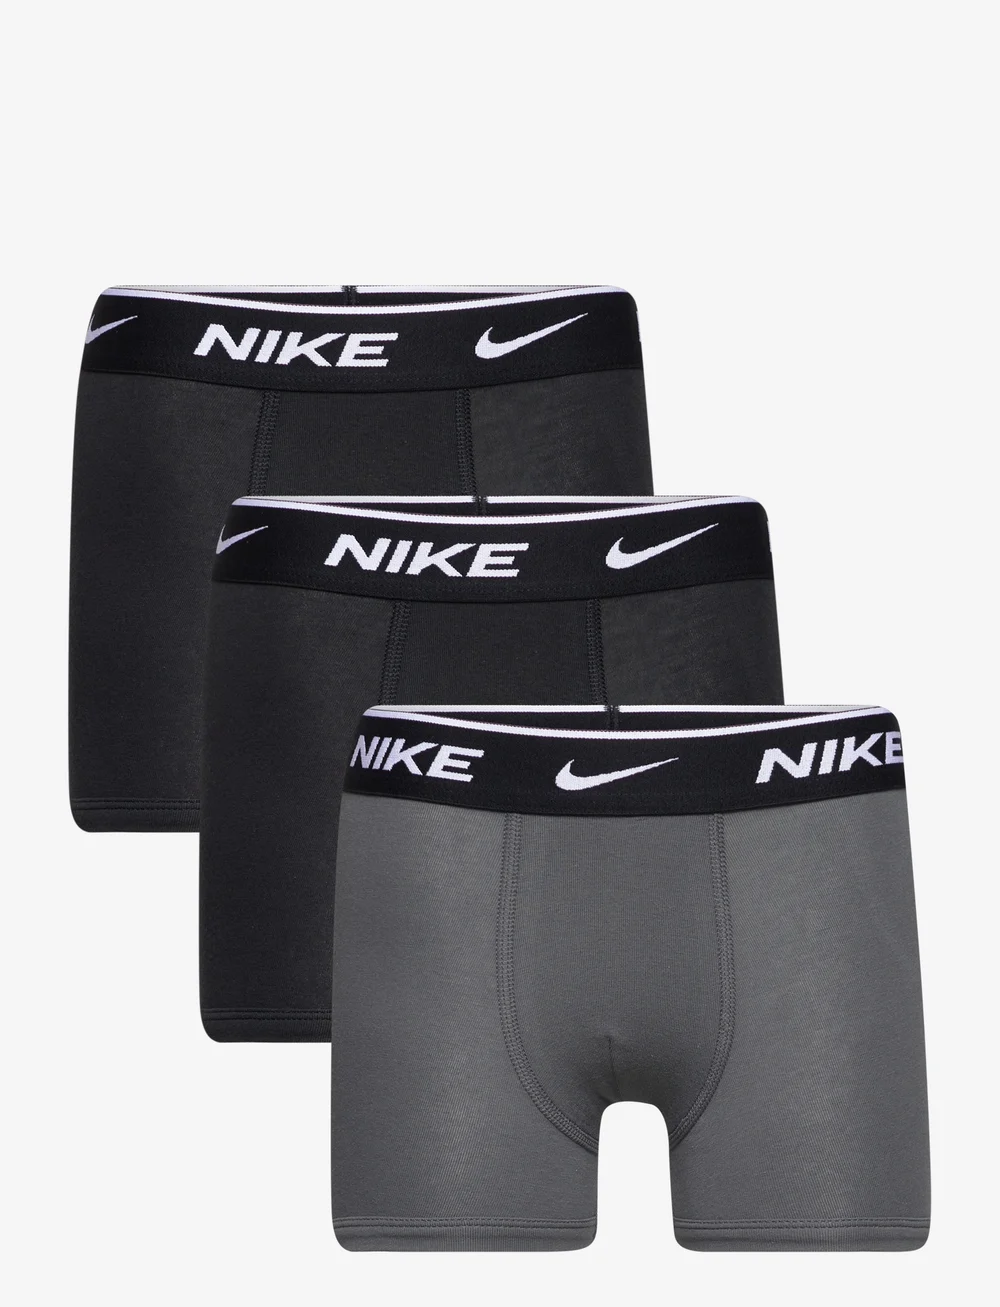 Nike Nhb E Day Stretch 3 / Nhb Nhb E Day Cotton Stretc - Undertøj - Boozt.com